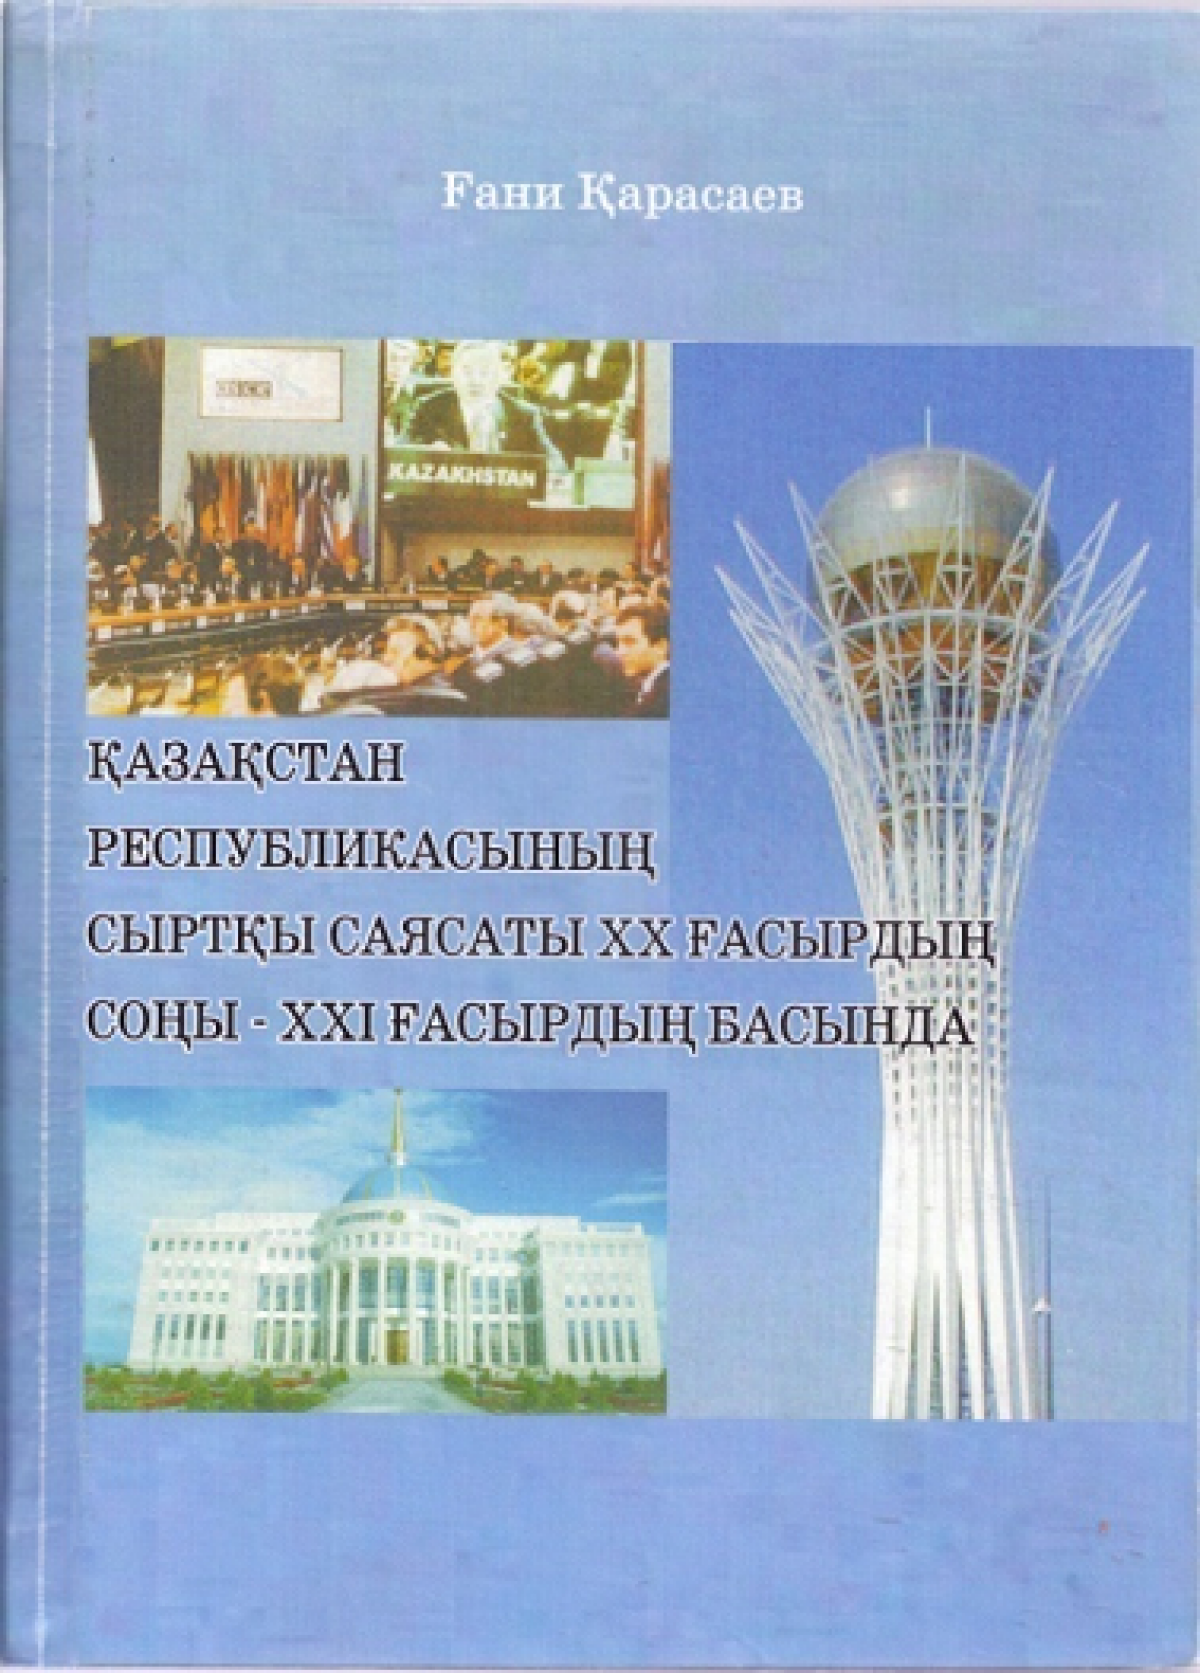 Внешняя политика Казахстана   в конце ХХ- начале ХХІ века - e-history.kz